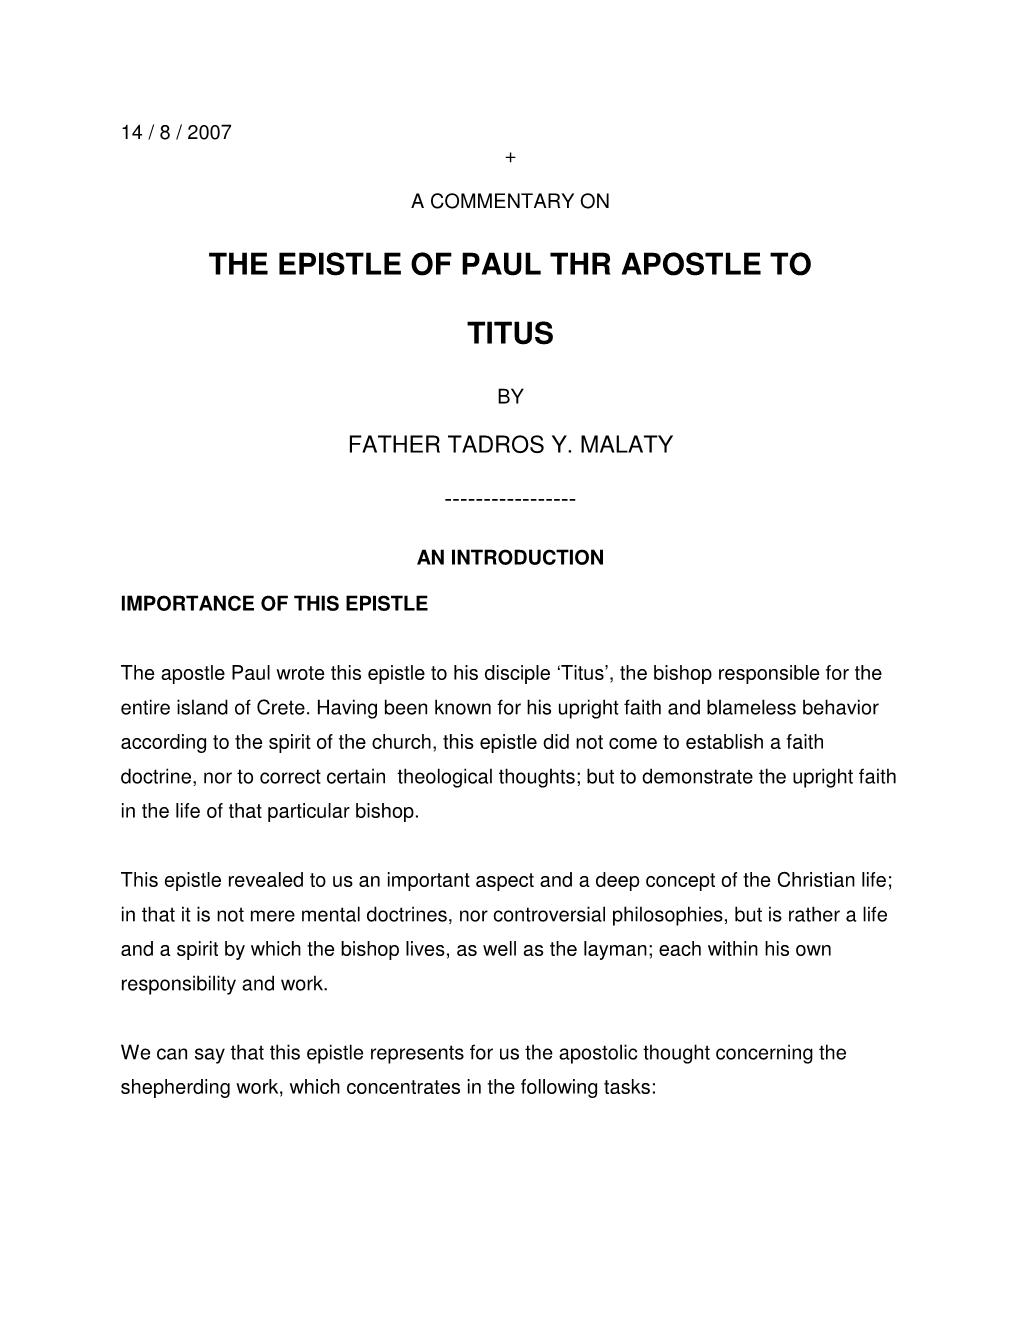 The Epistle of Paul Thr Apostle to Titus